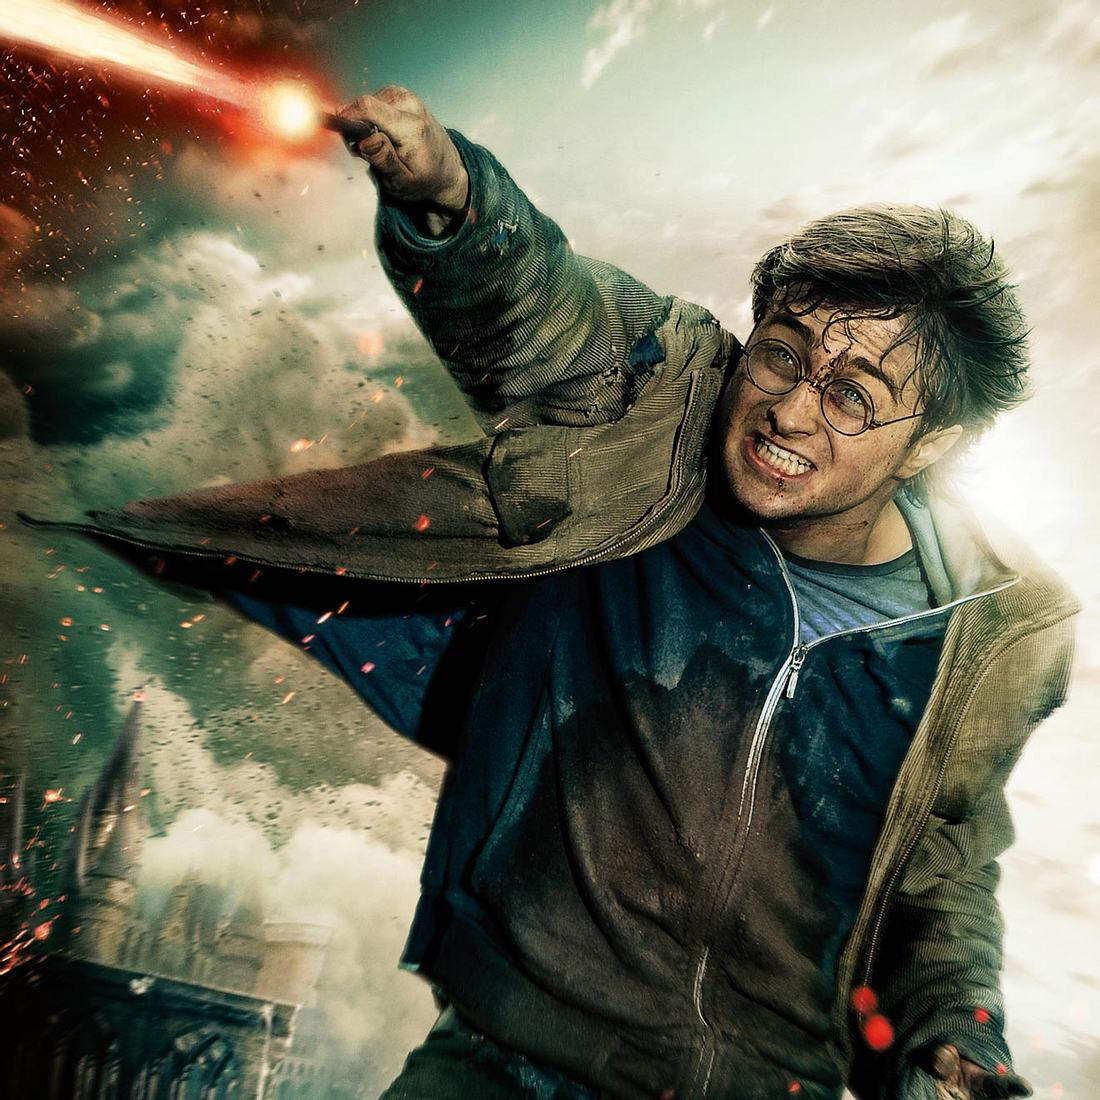 Viele Fans würden sich über eine Harry Potter-Serie freuen